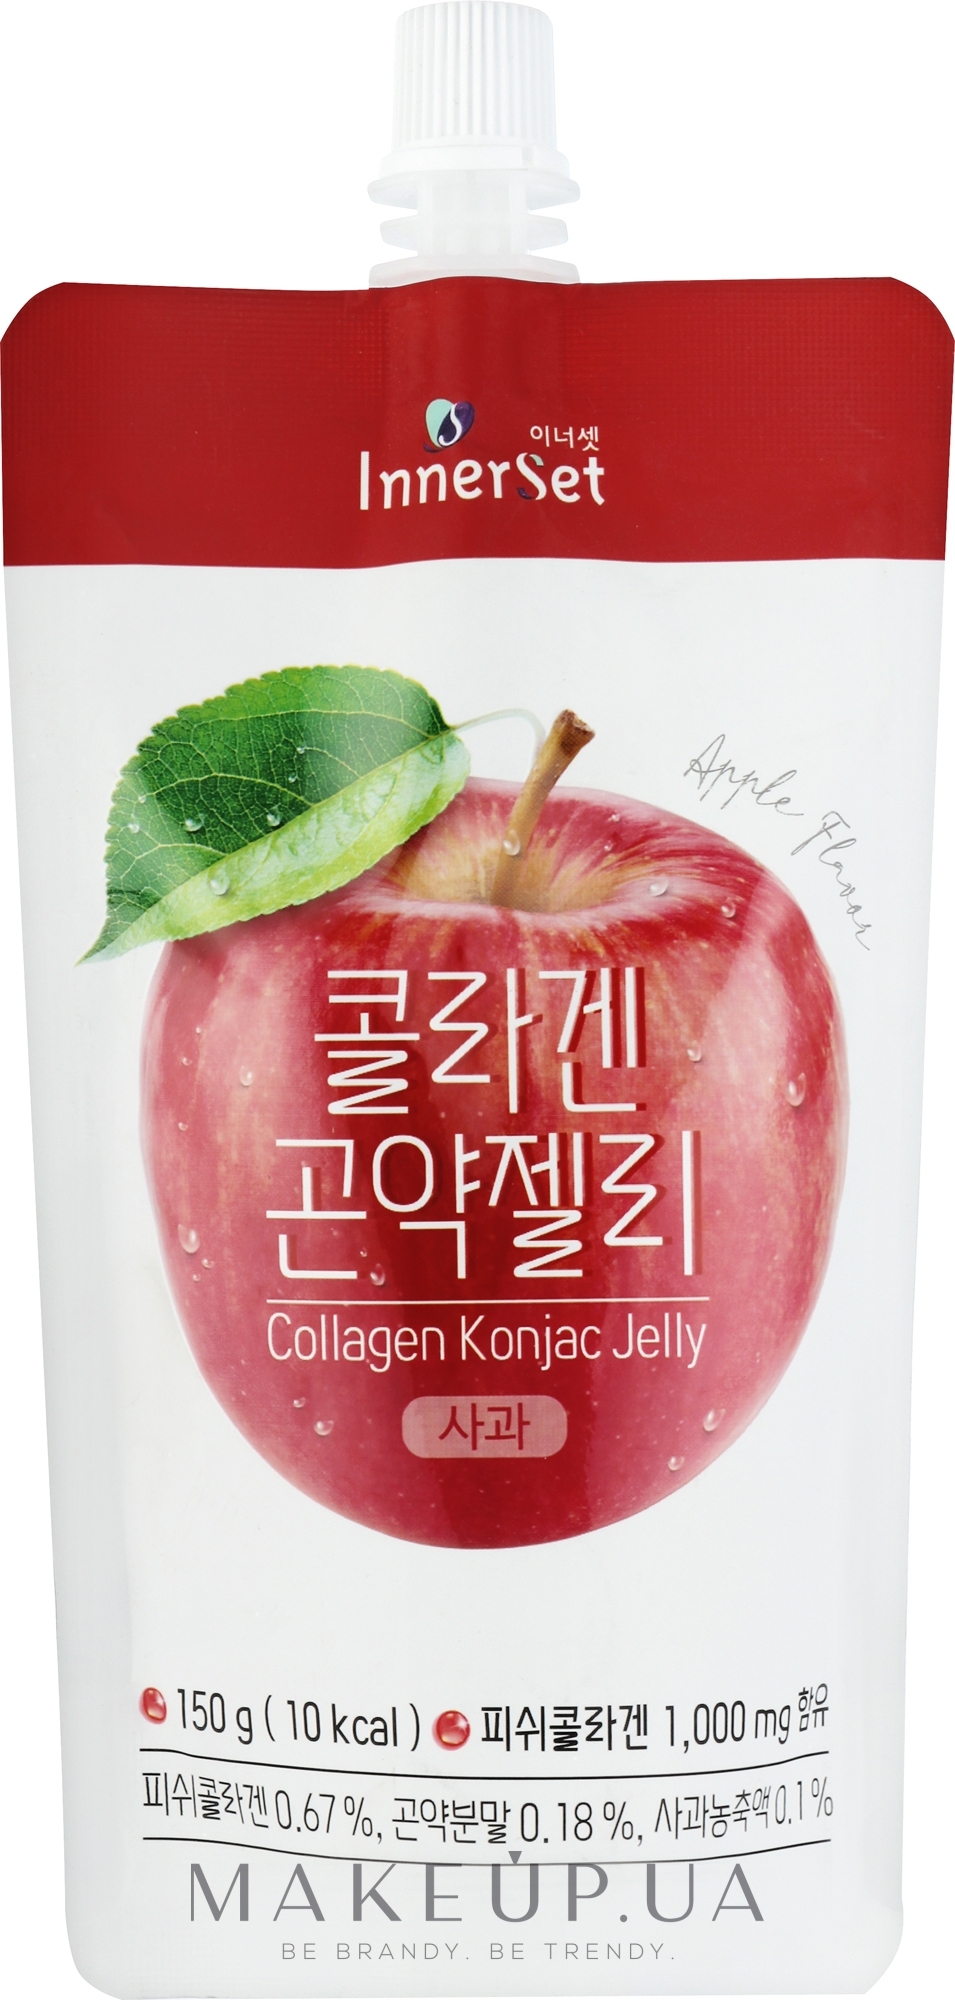 Съедобное коллагеновое желе с экстрактом яблока - Innerset Collagen Konjac Jelly — фото 150g